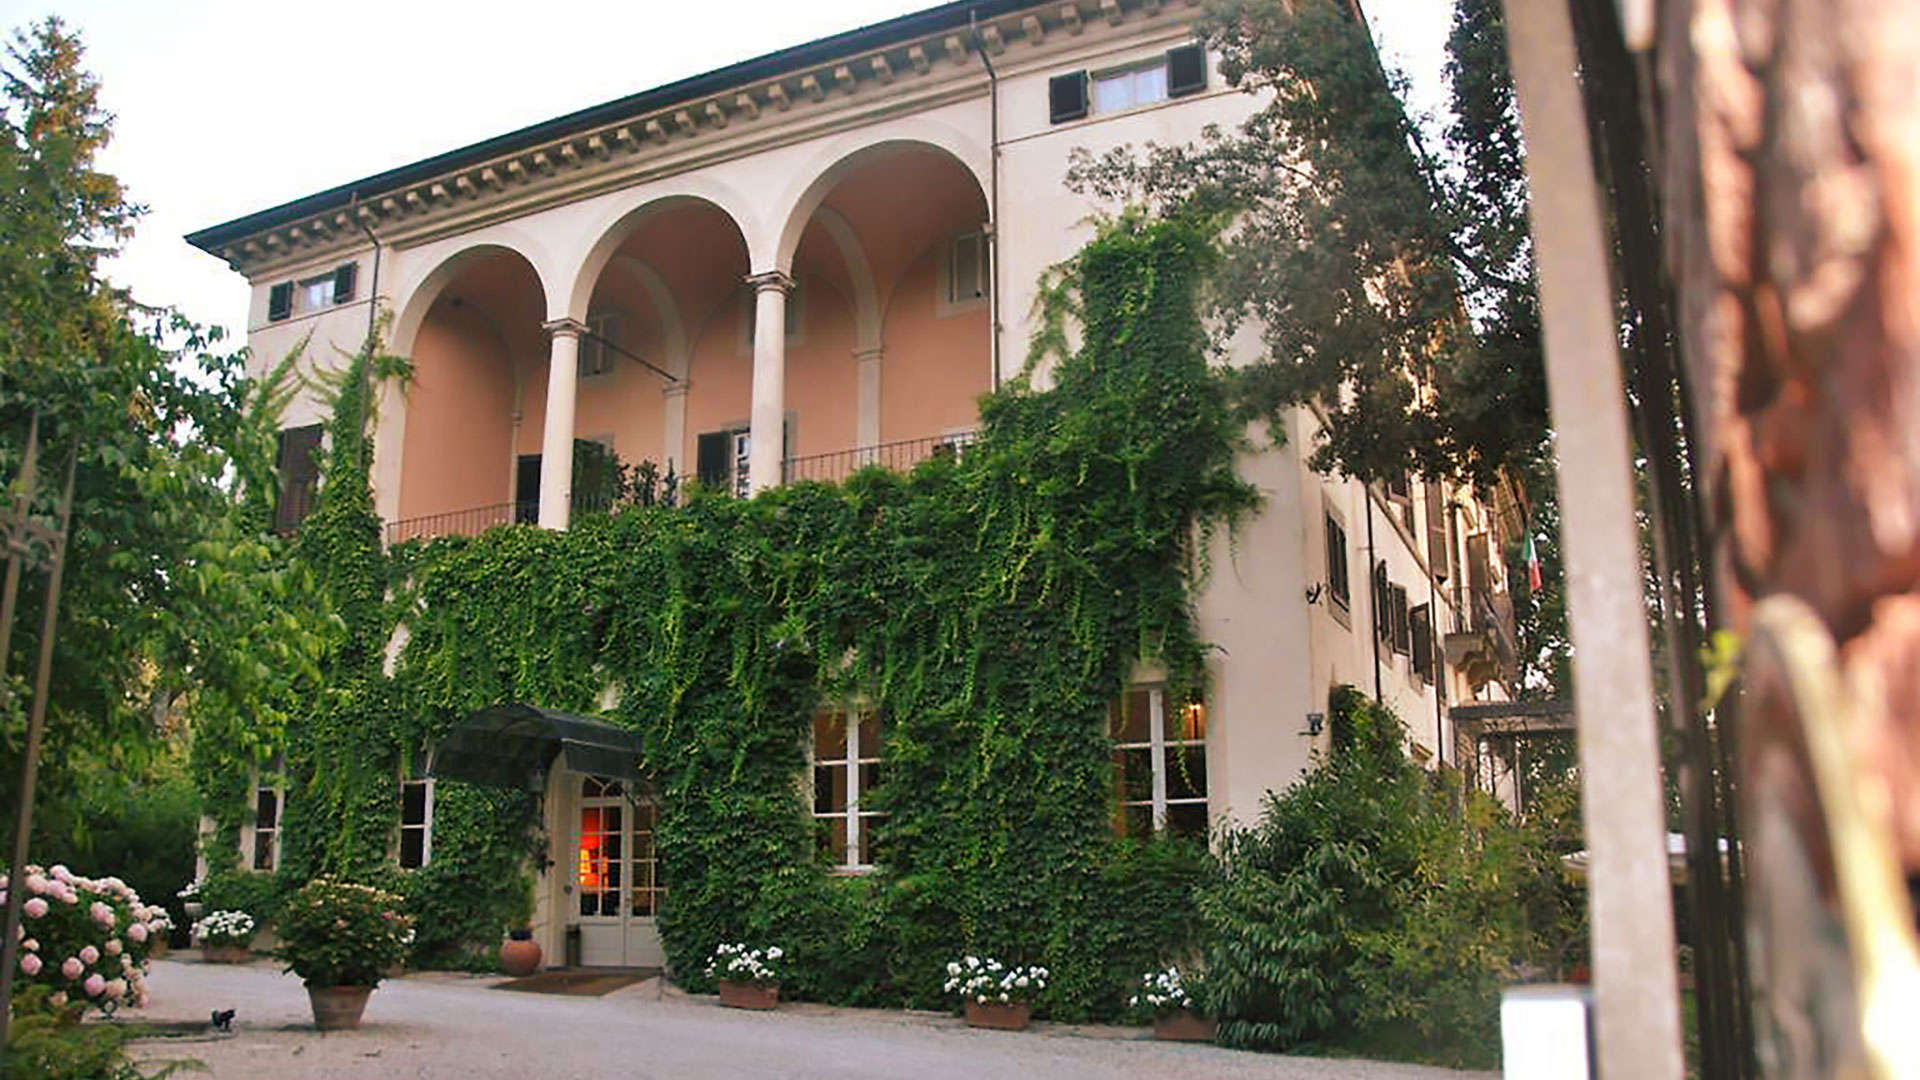 Villa La Princioessa Indgangl